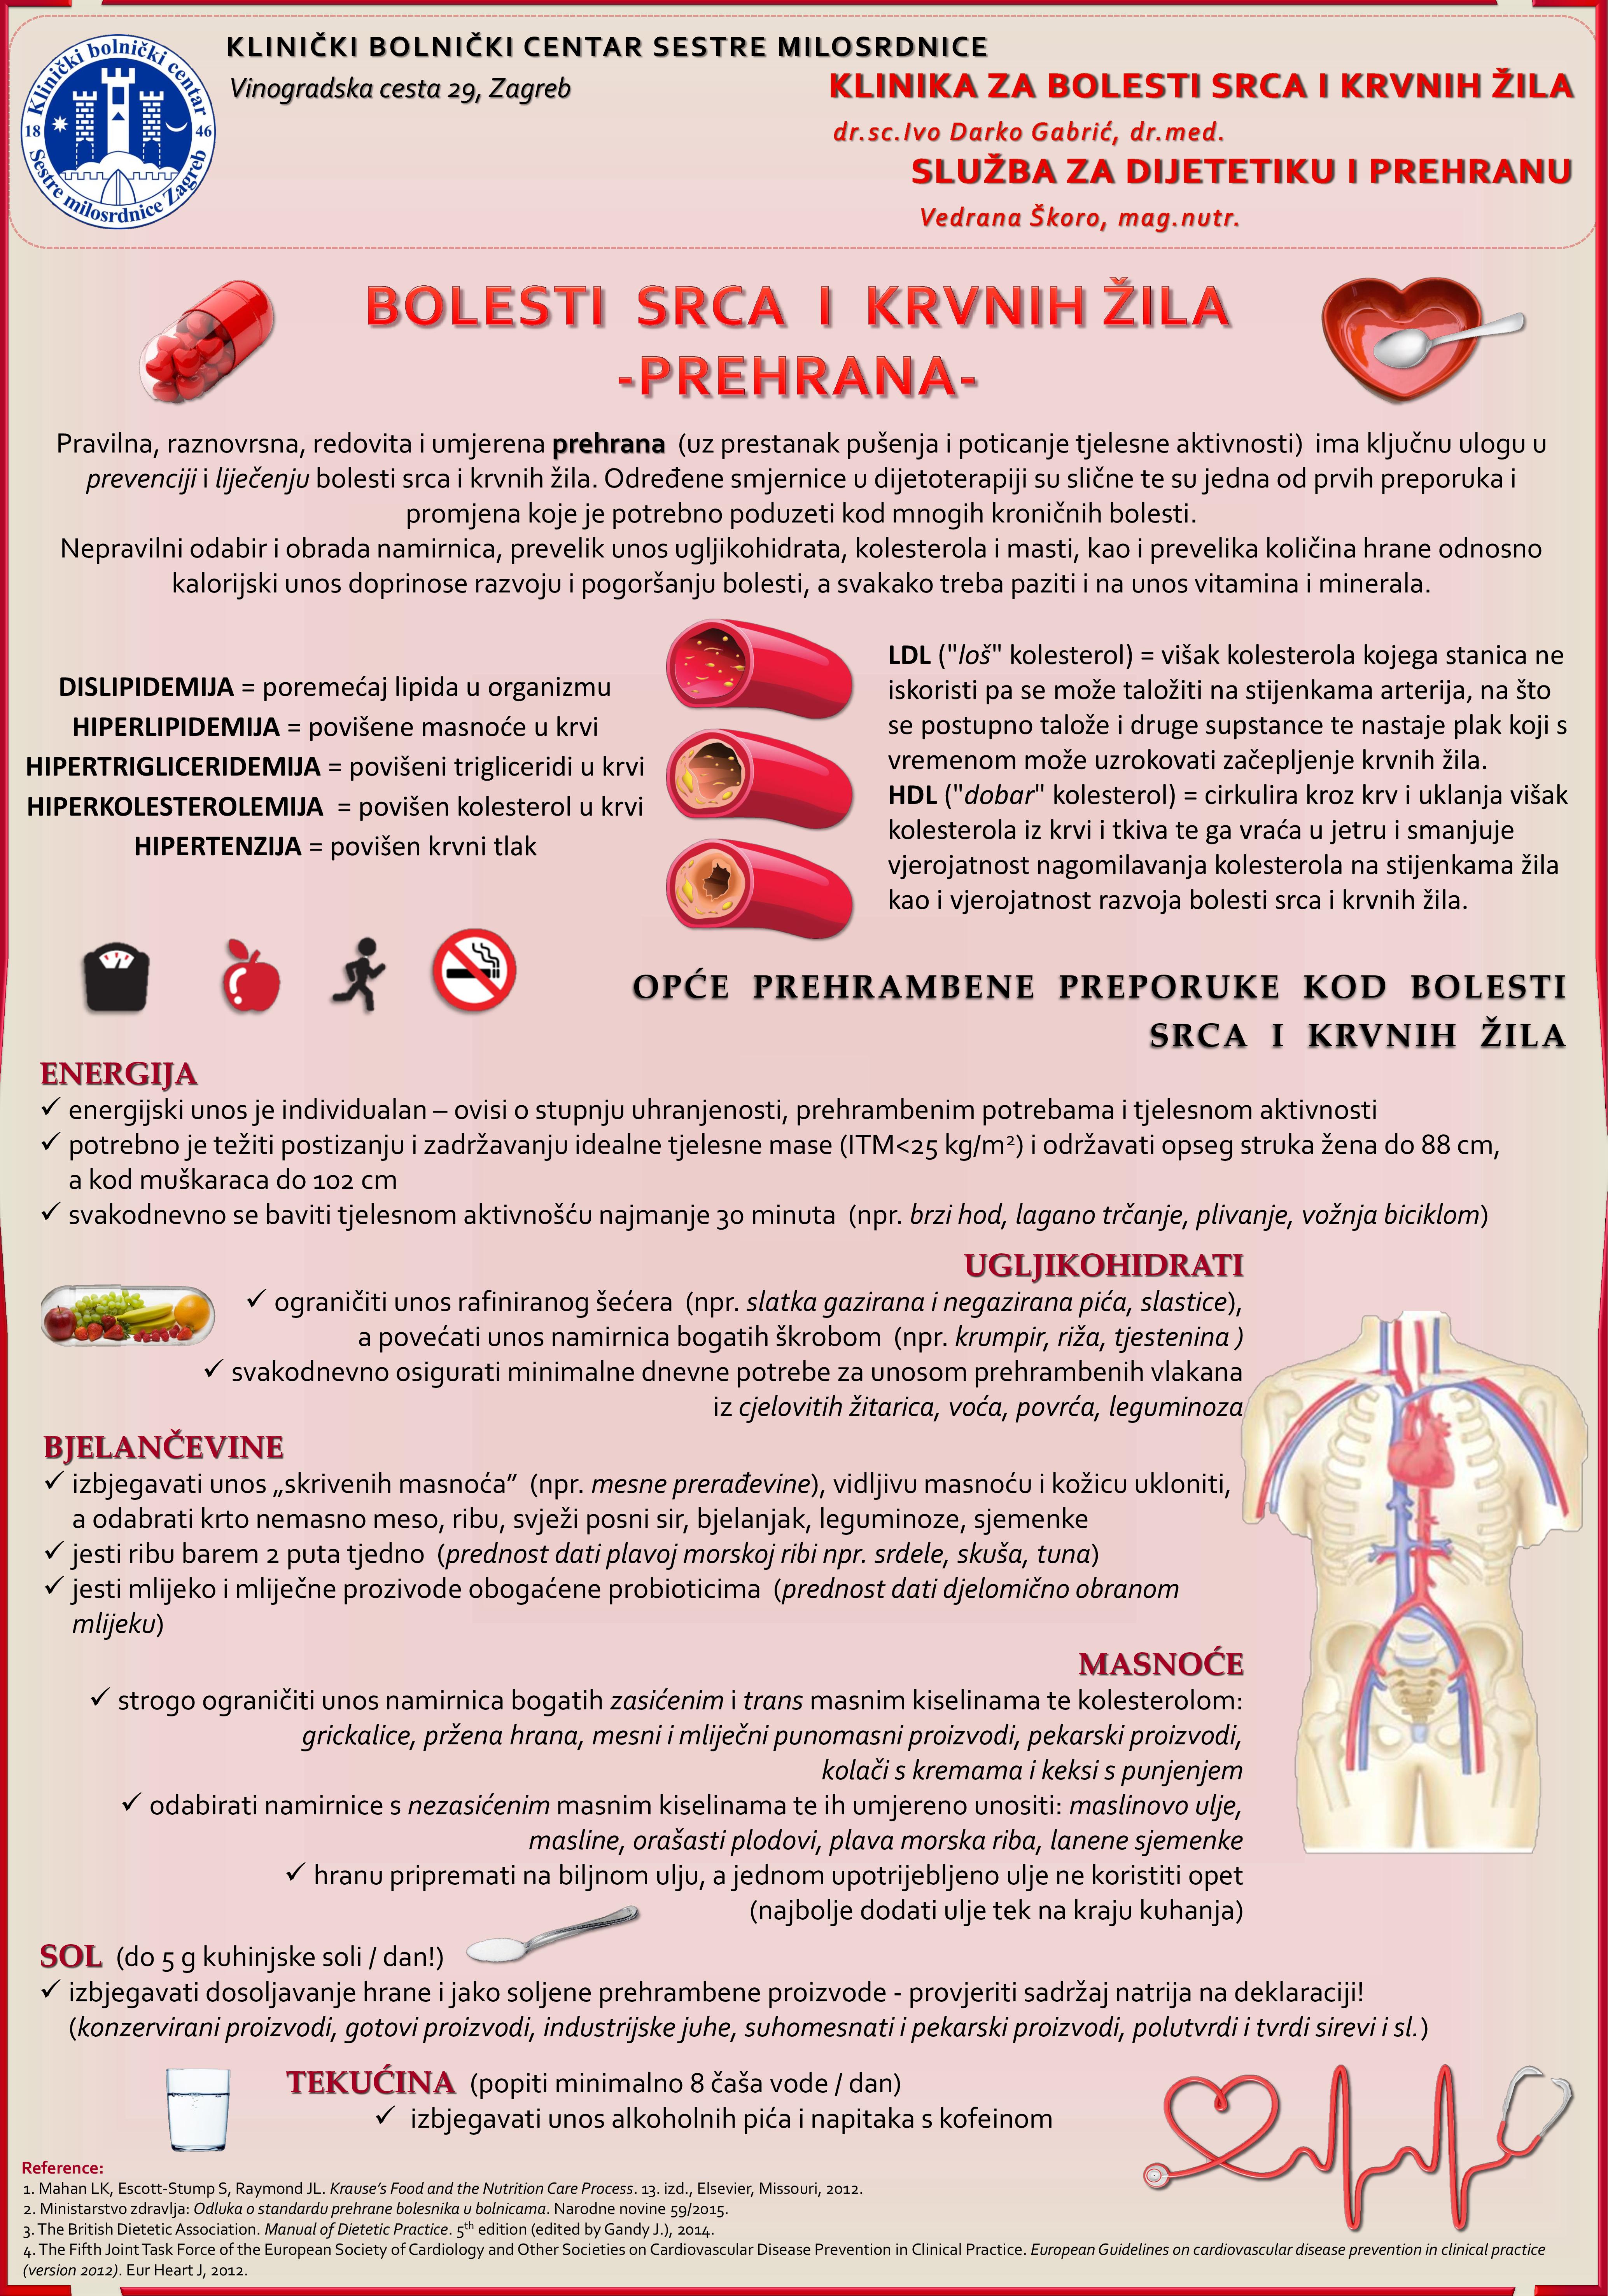 dijeta hipertenzija i koronarna bolest srca)